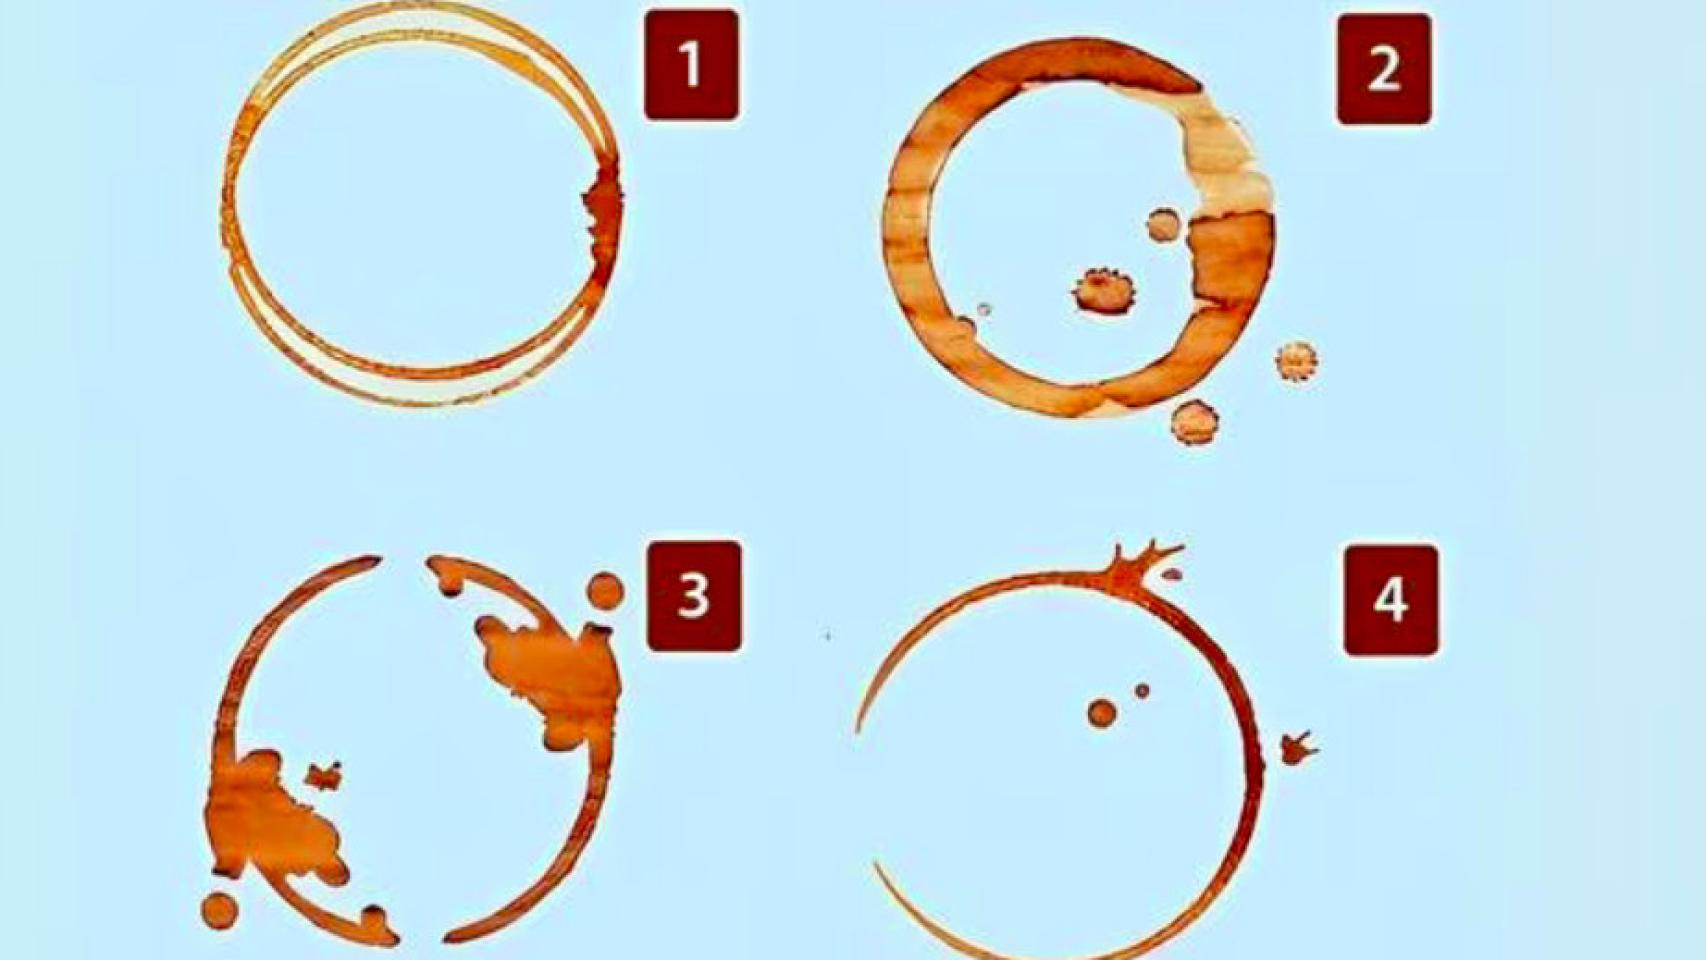 ¿Cuál de estas cuatro marcas del café eliges en este test visual?